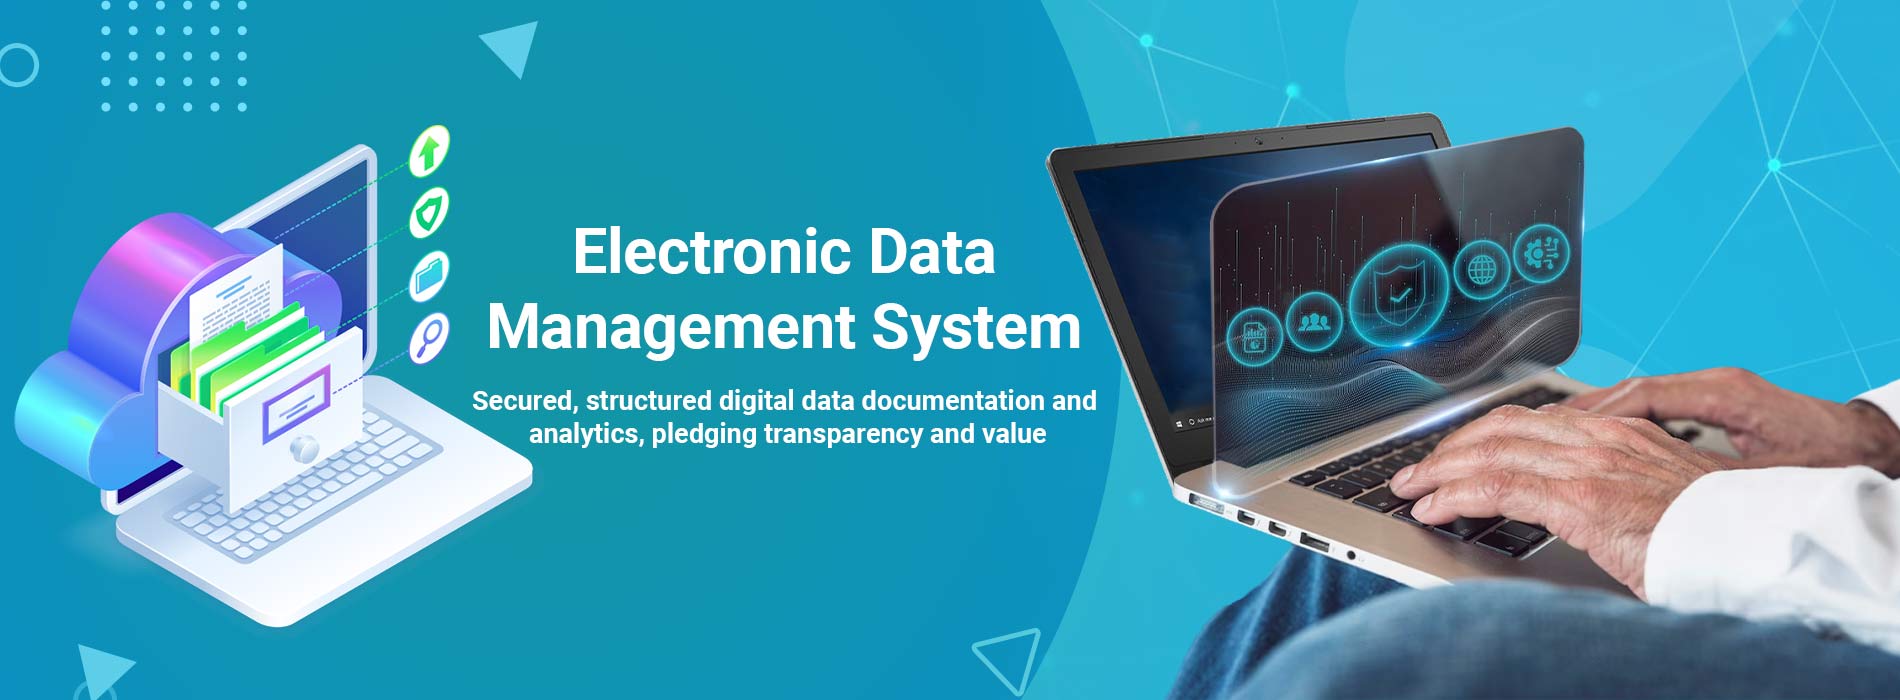 Electronic-Data-Management